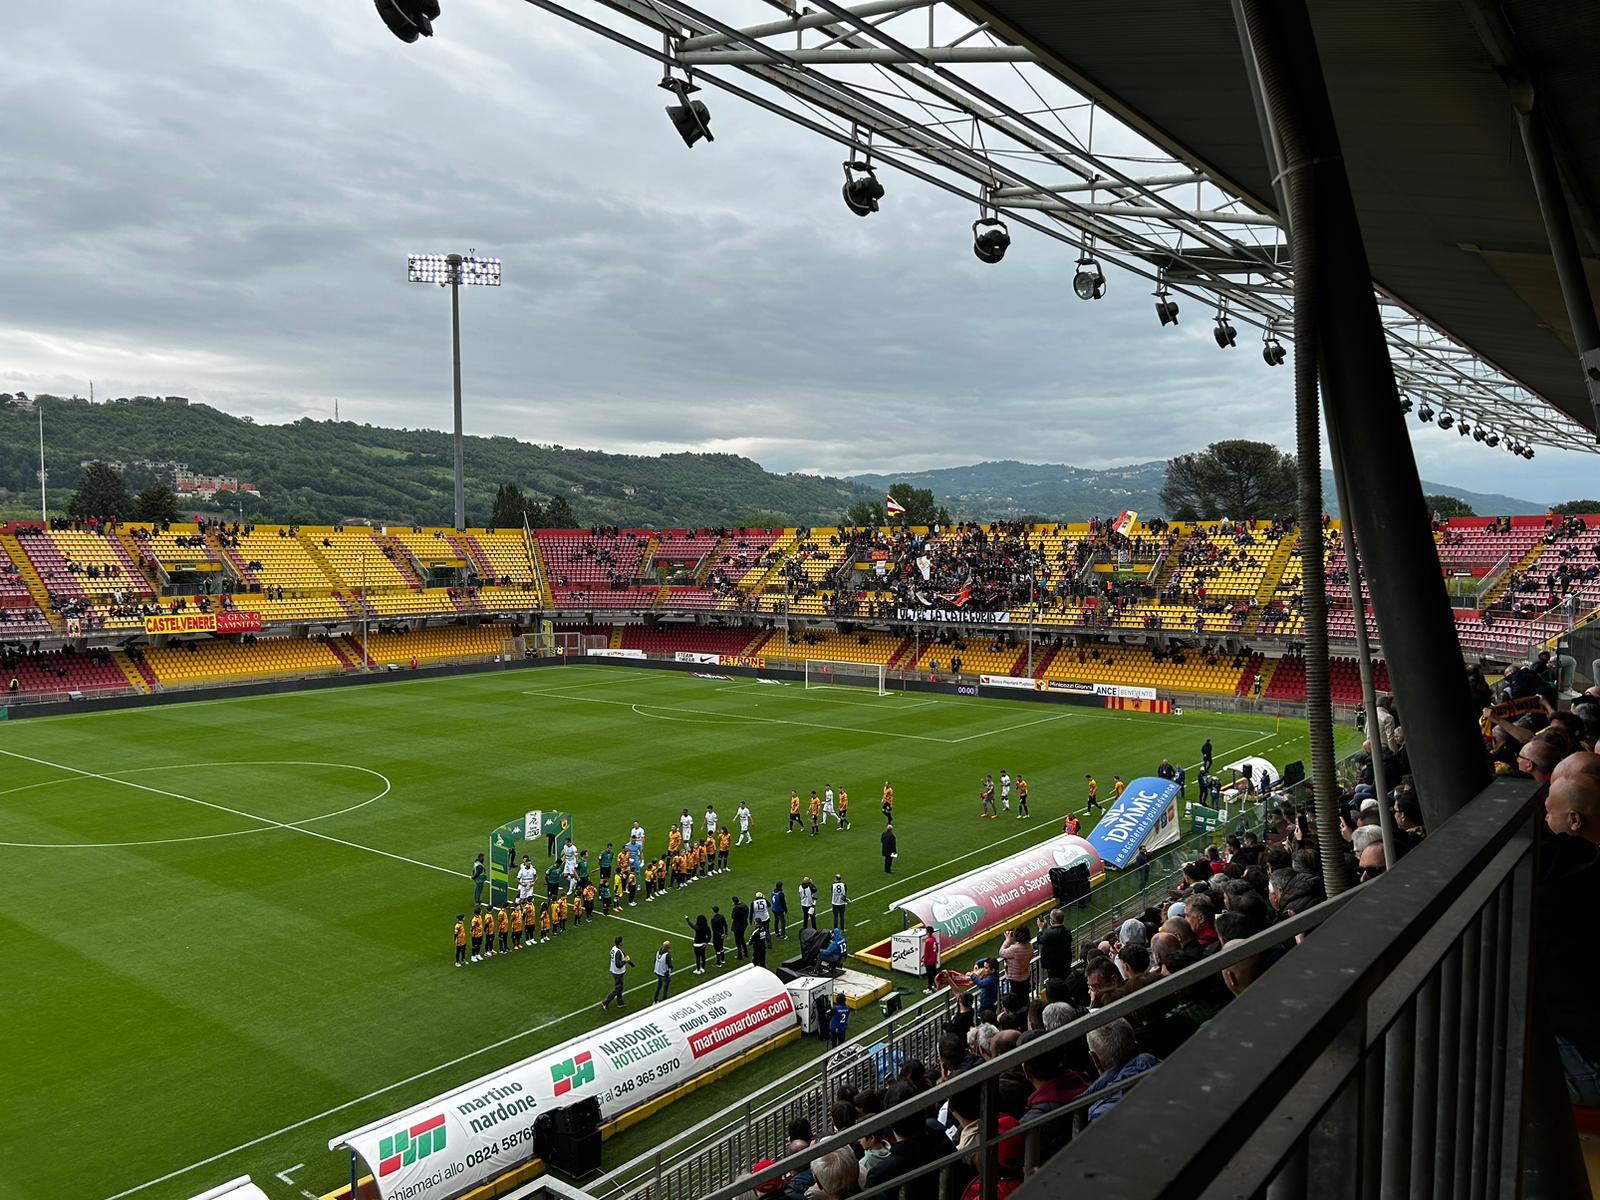 Benevento-Modena: 2-1. La Strega ritrova i 3 punti nel giorno dell’aritmetica retrocessione